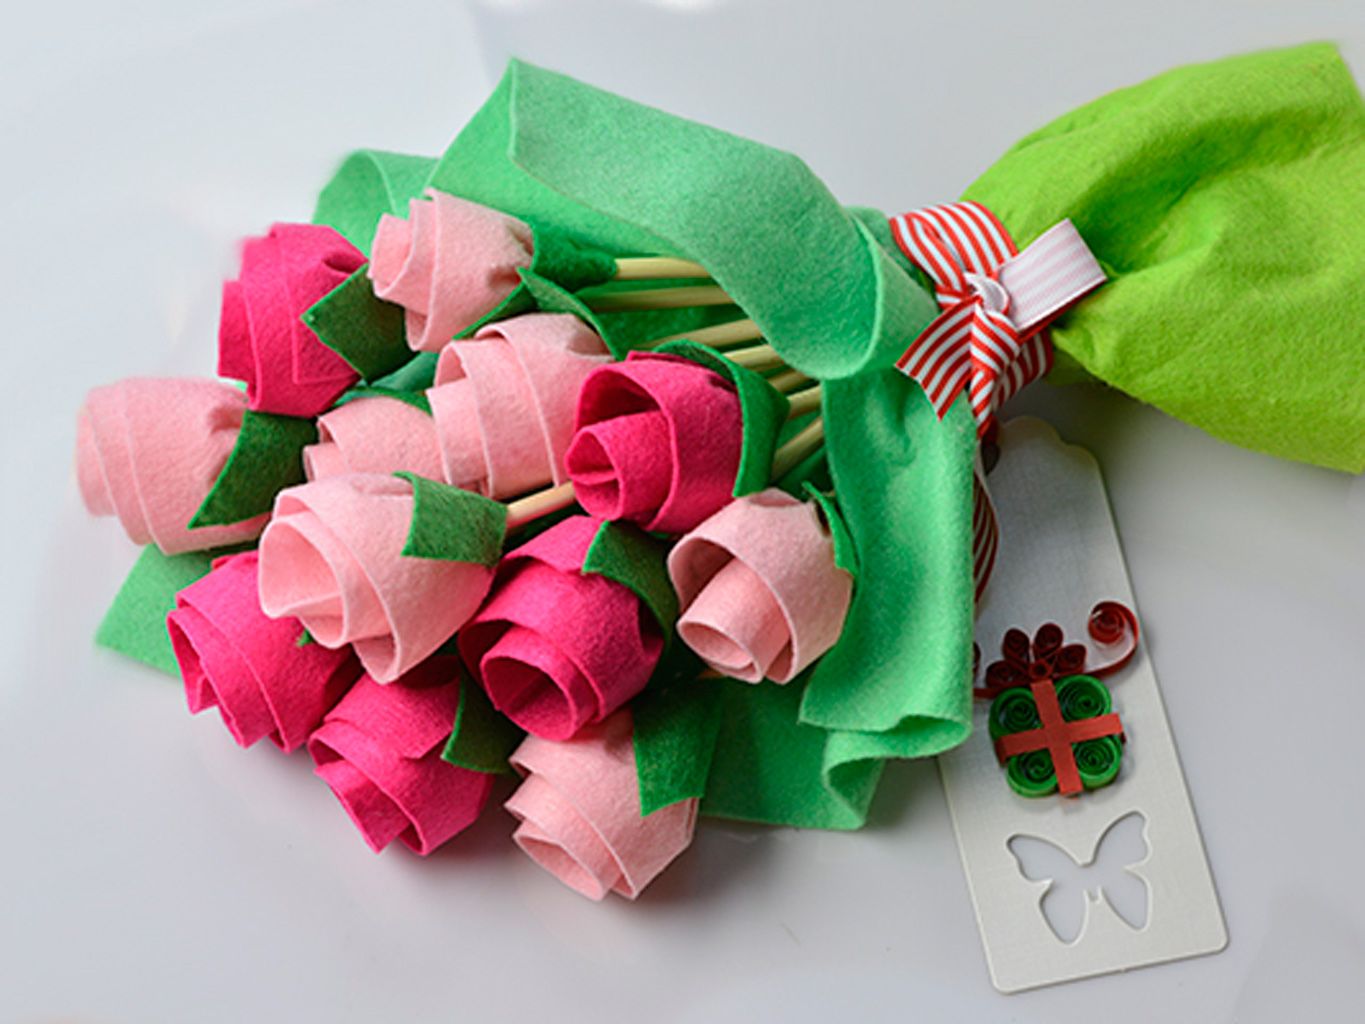 Tienda Cría heredar Ramos de flores de regalo para el Día de la madre - Manualidades